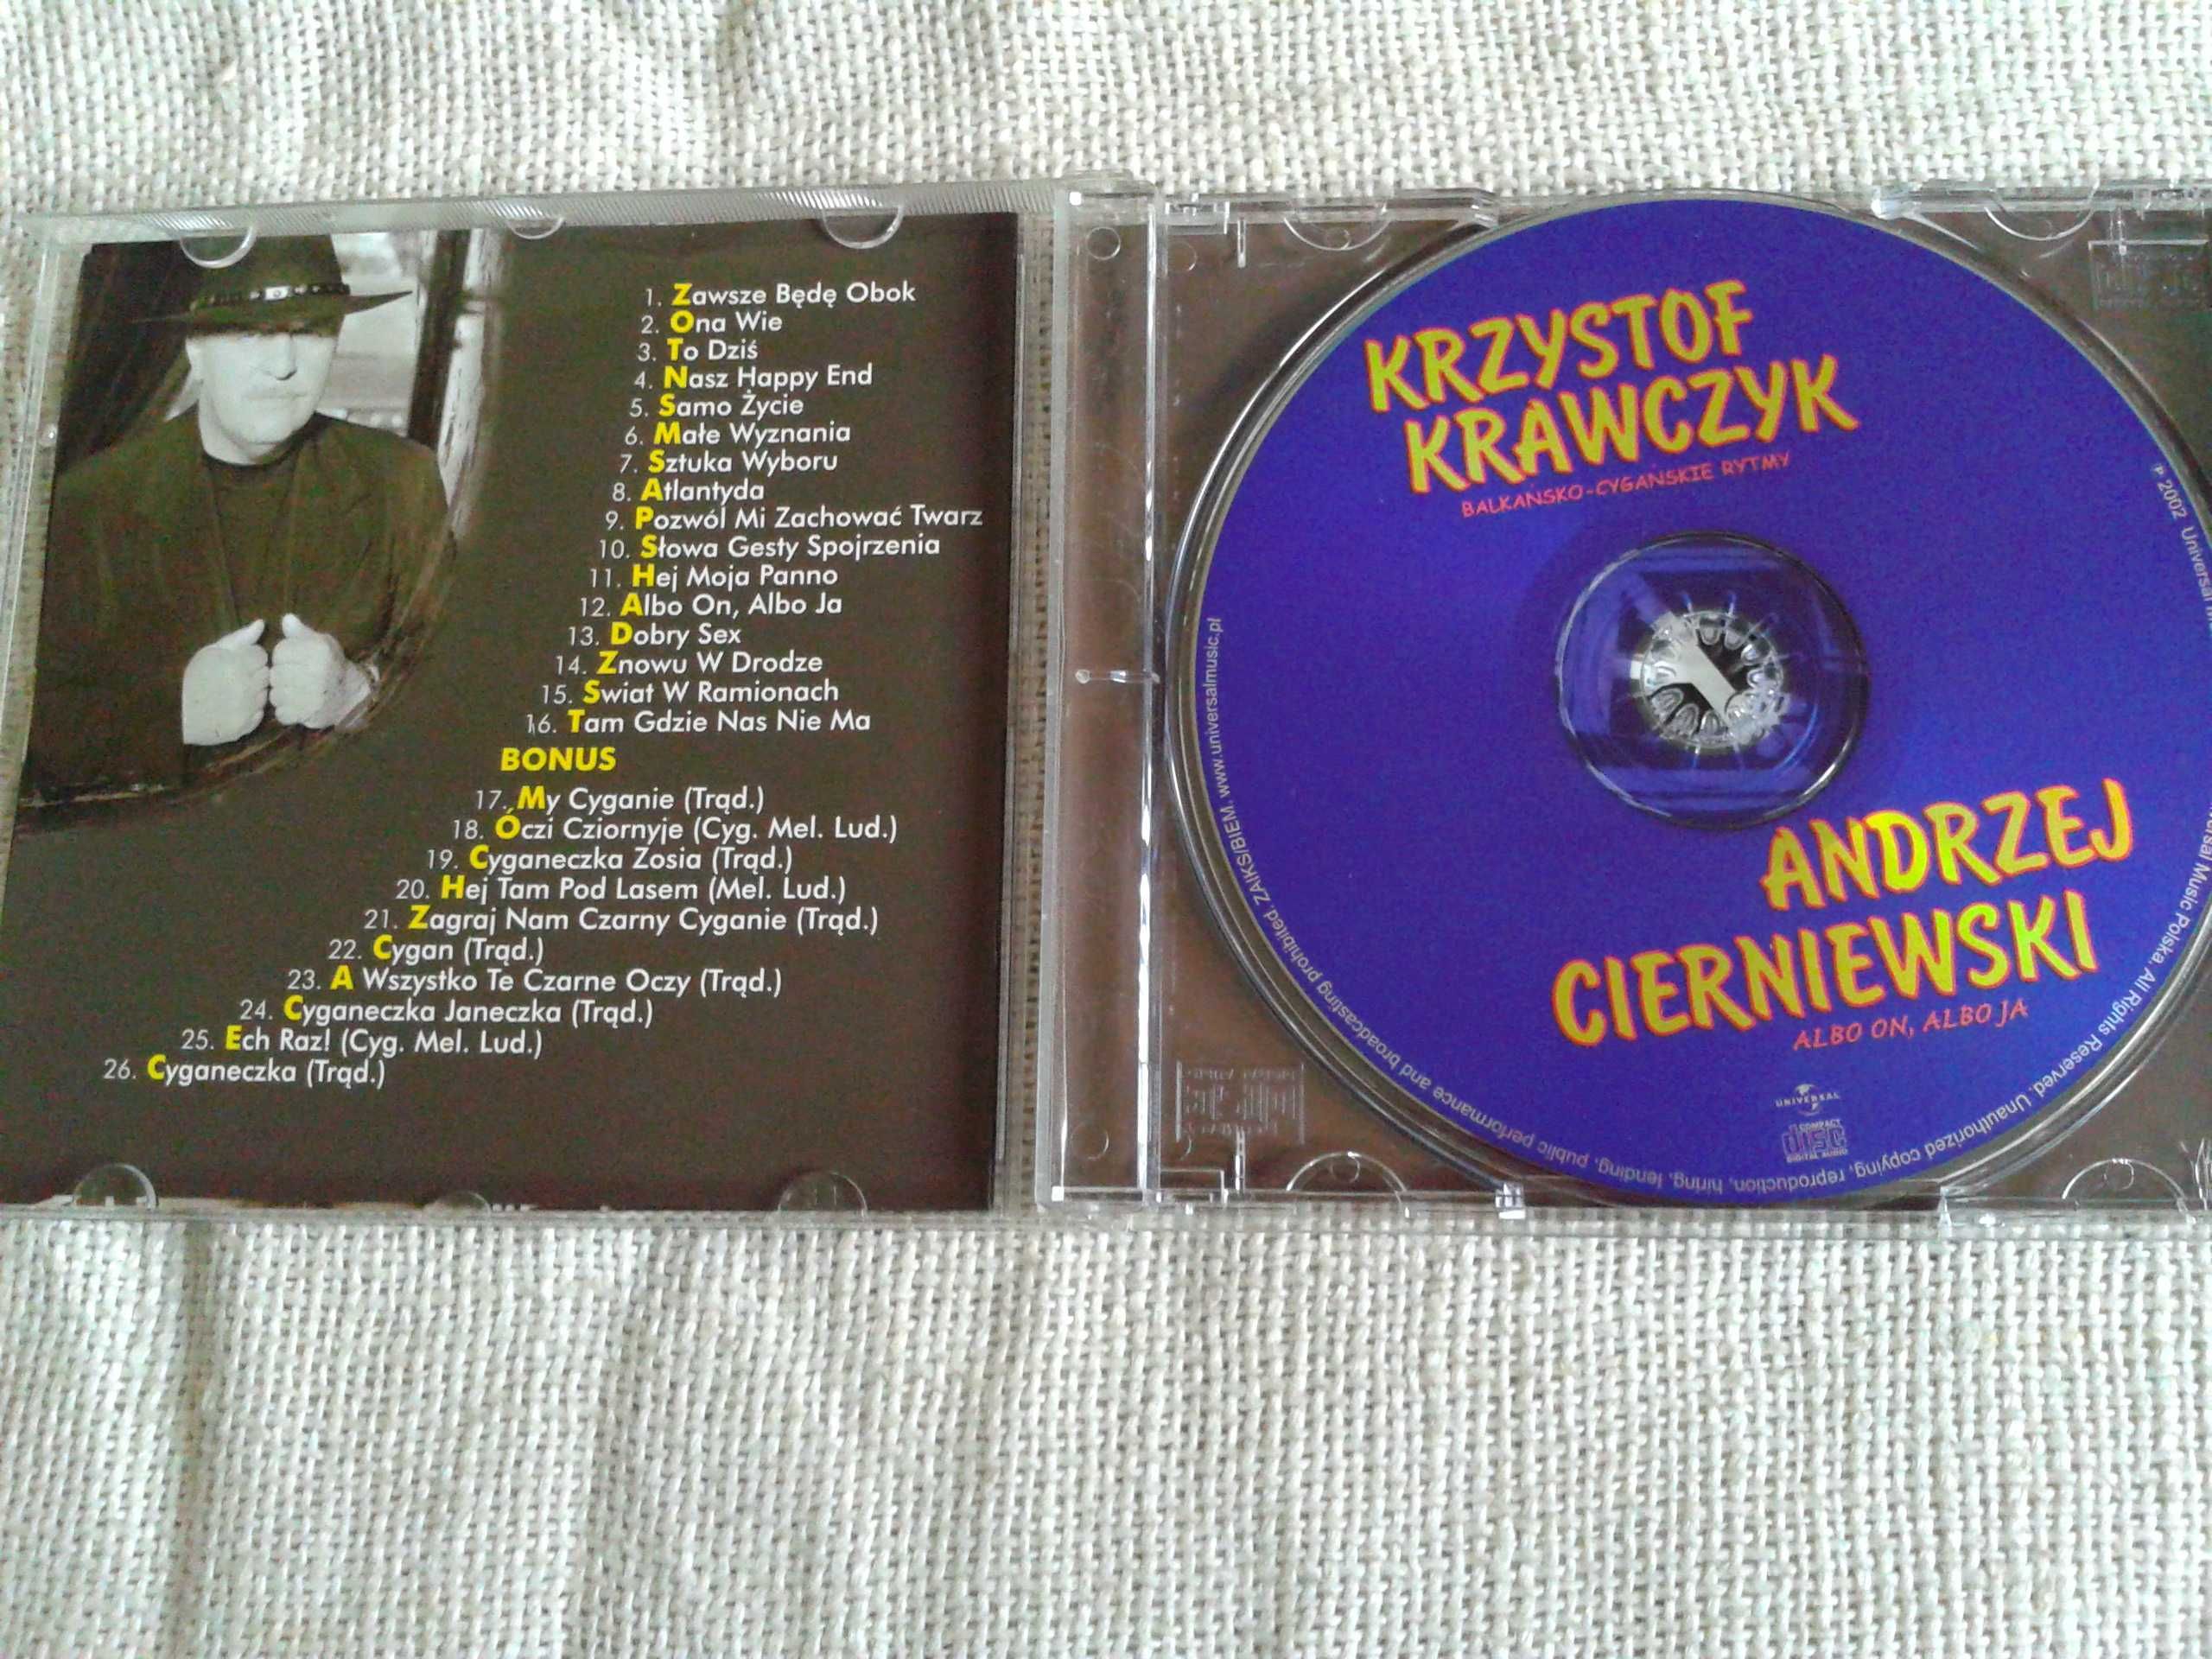 Krzysztof Krawczyk – Bałkańsko-Cygańskie Rytmy + A.Cierniewski  CD